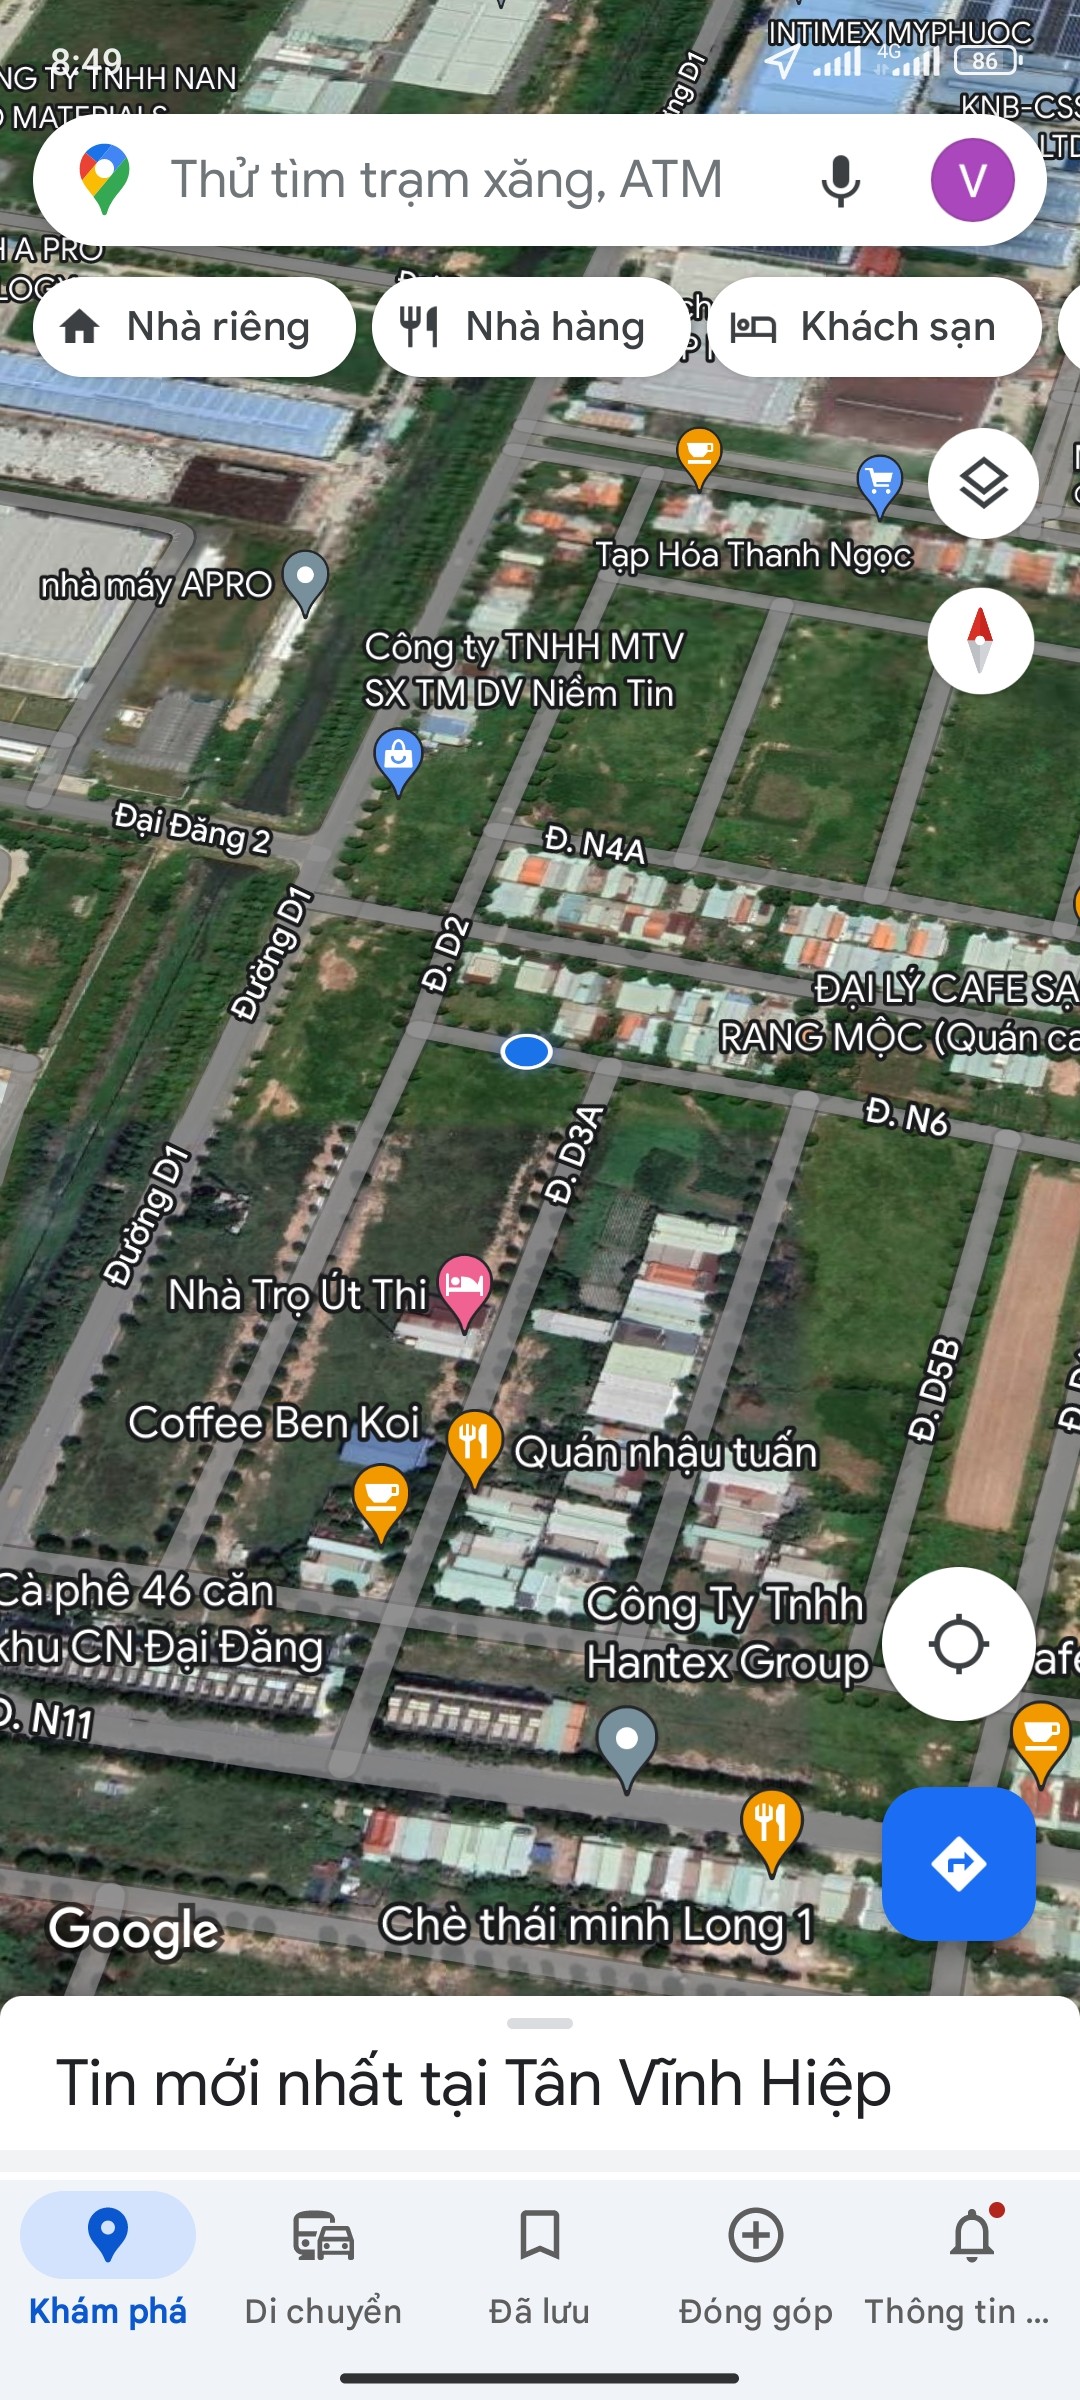 Đất nền tái định cư Phú Tân, Thủ Dầu Một, Thành phố mới Bình Dương, dân cư đông kinh doanh buôn bán ok 3